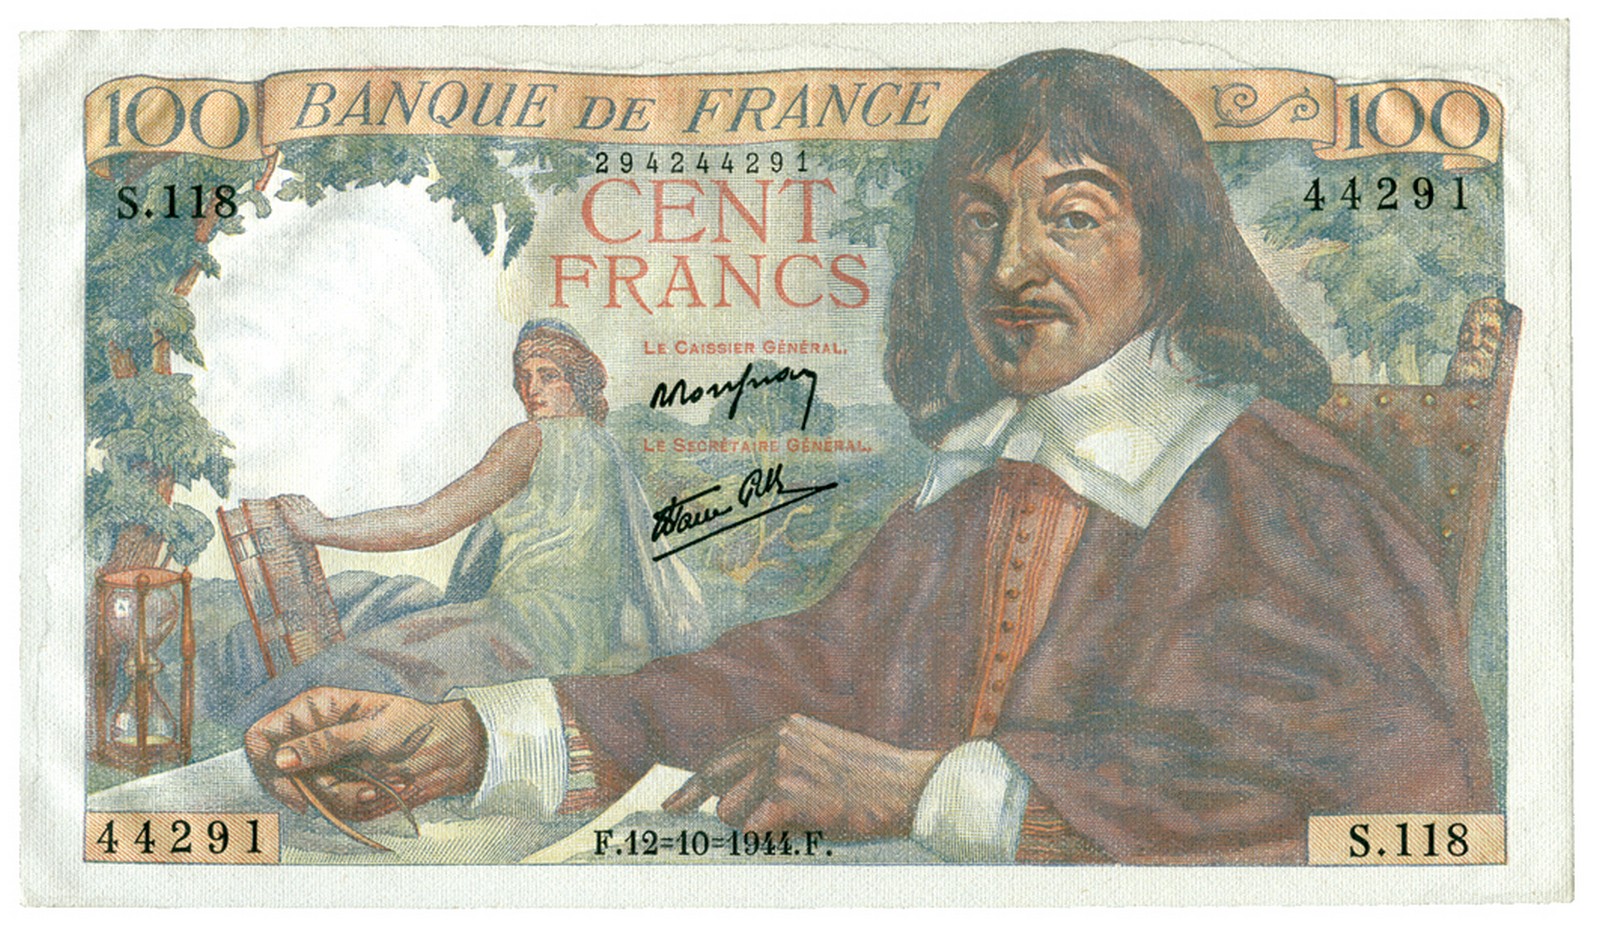 BANKNOTES, 紙鈔, FRANCE, 法國, Banque de France: 100-Francs, 12 October 1944, serial no.S118 44291,